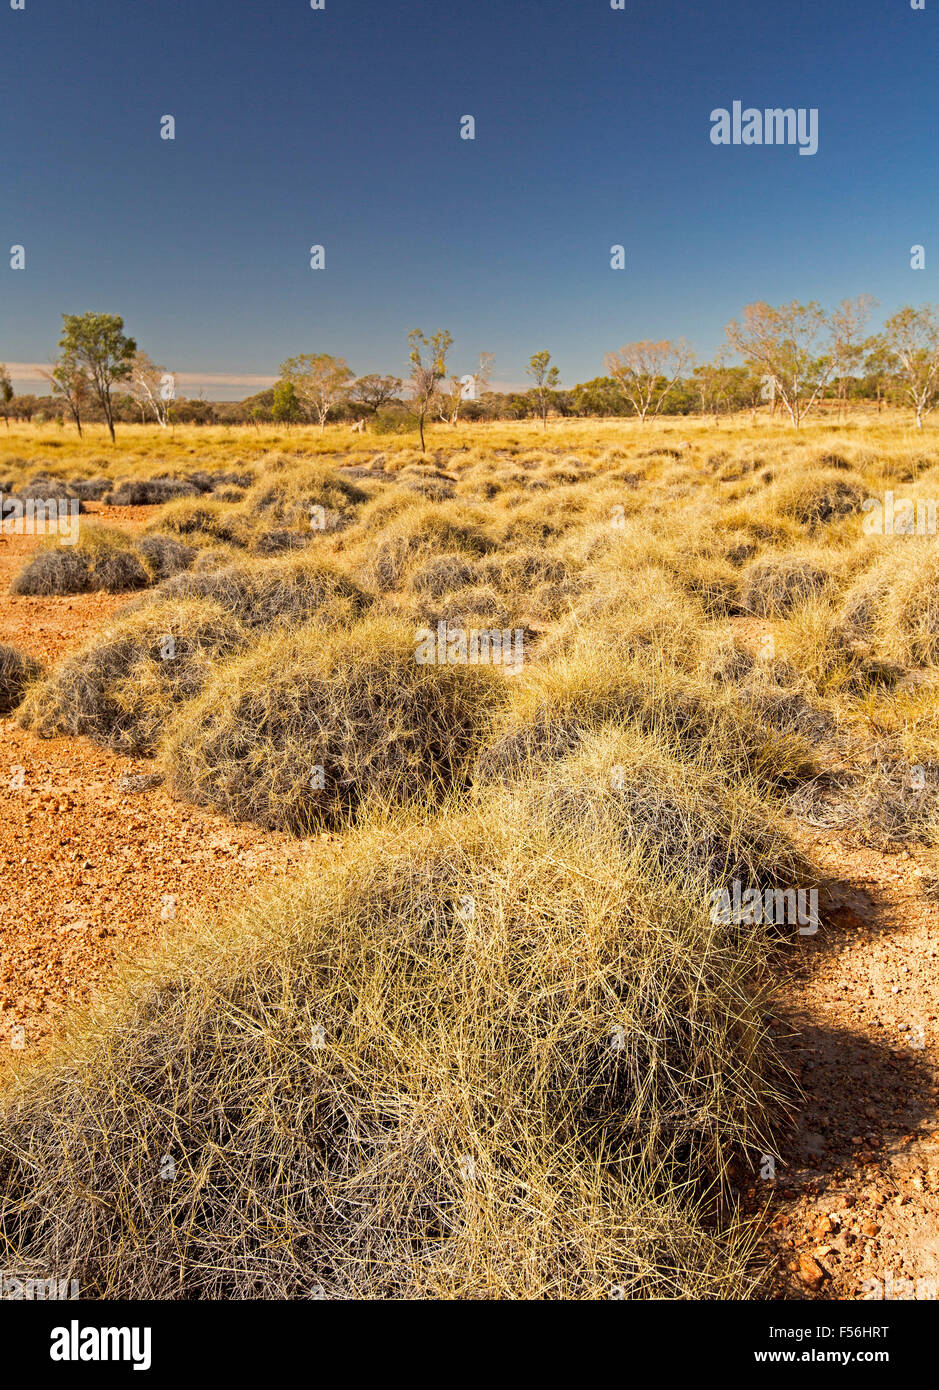 Farbenfrohe australische Outback-Landschaft mit goldenen Spinifex Grass weitläufige über Ebenen bis hin zu fernen Wäldern unter blauem Himmel, Stockfoto